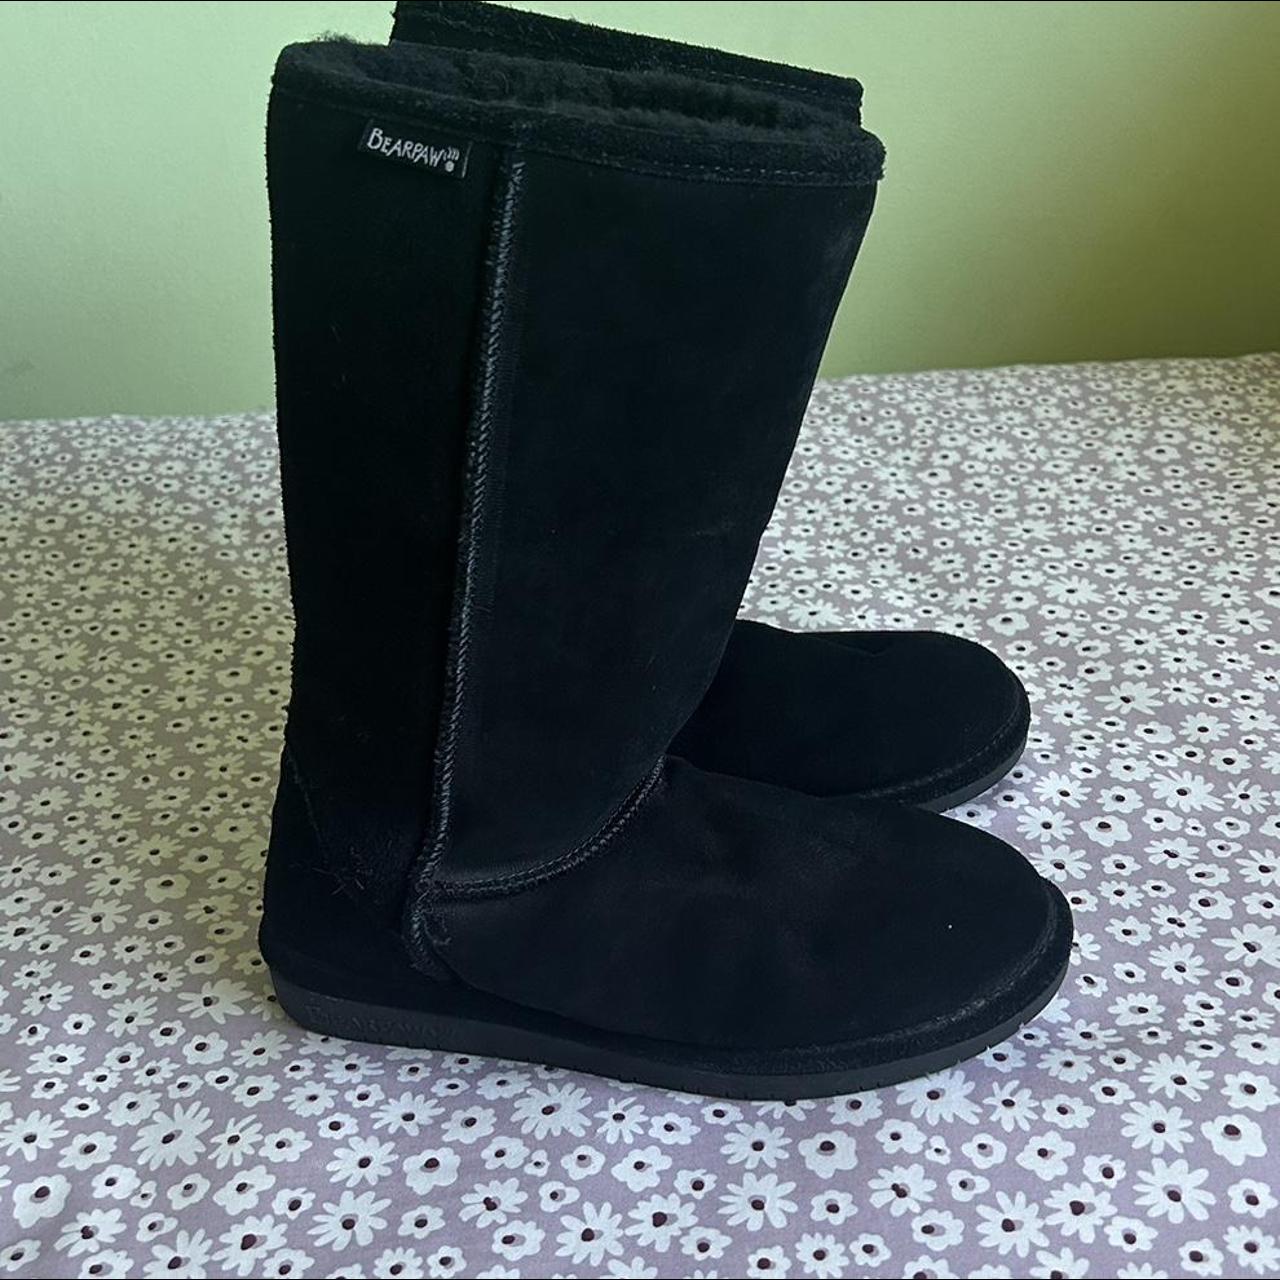 Black bearpaw boots Size Some wear - Depop